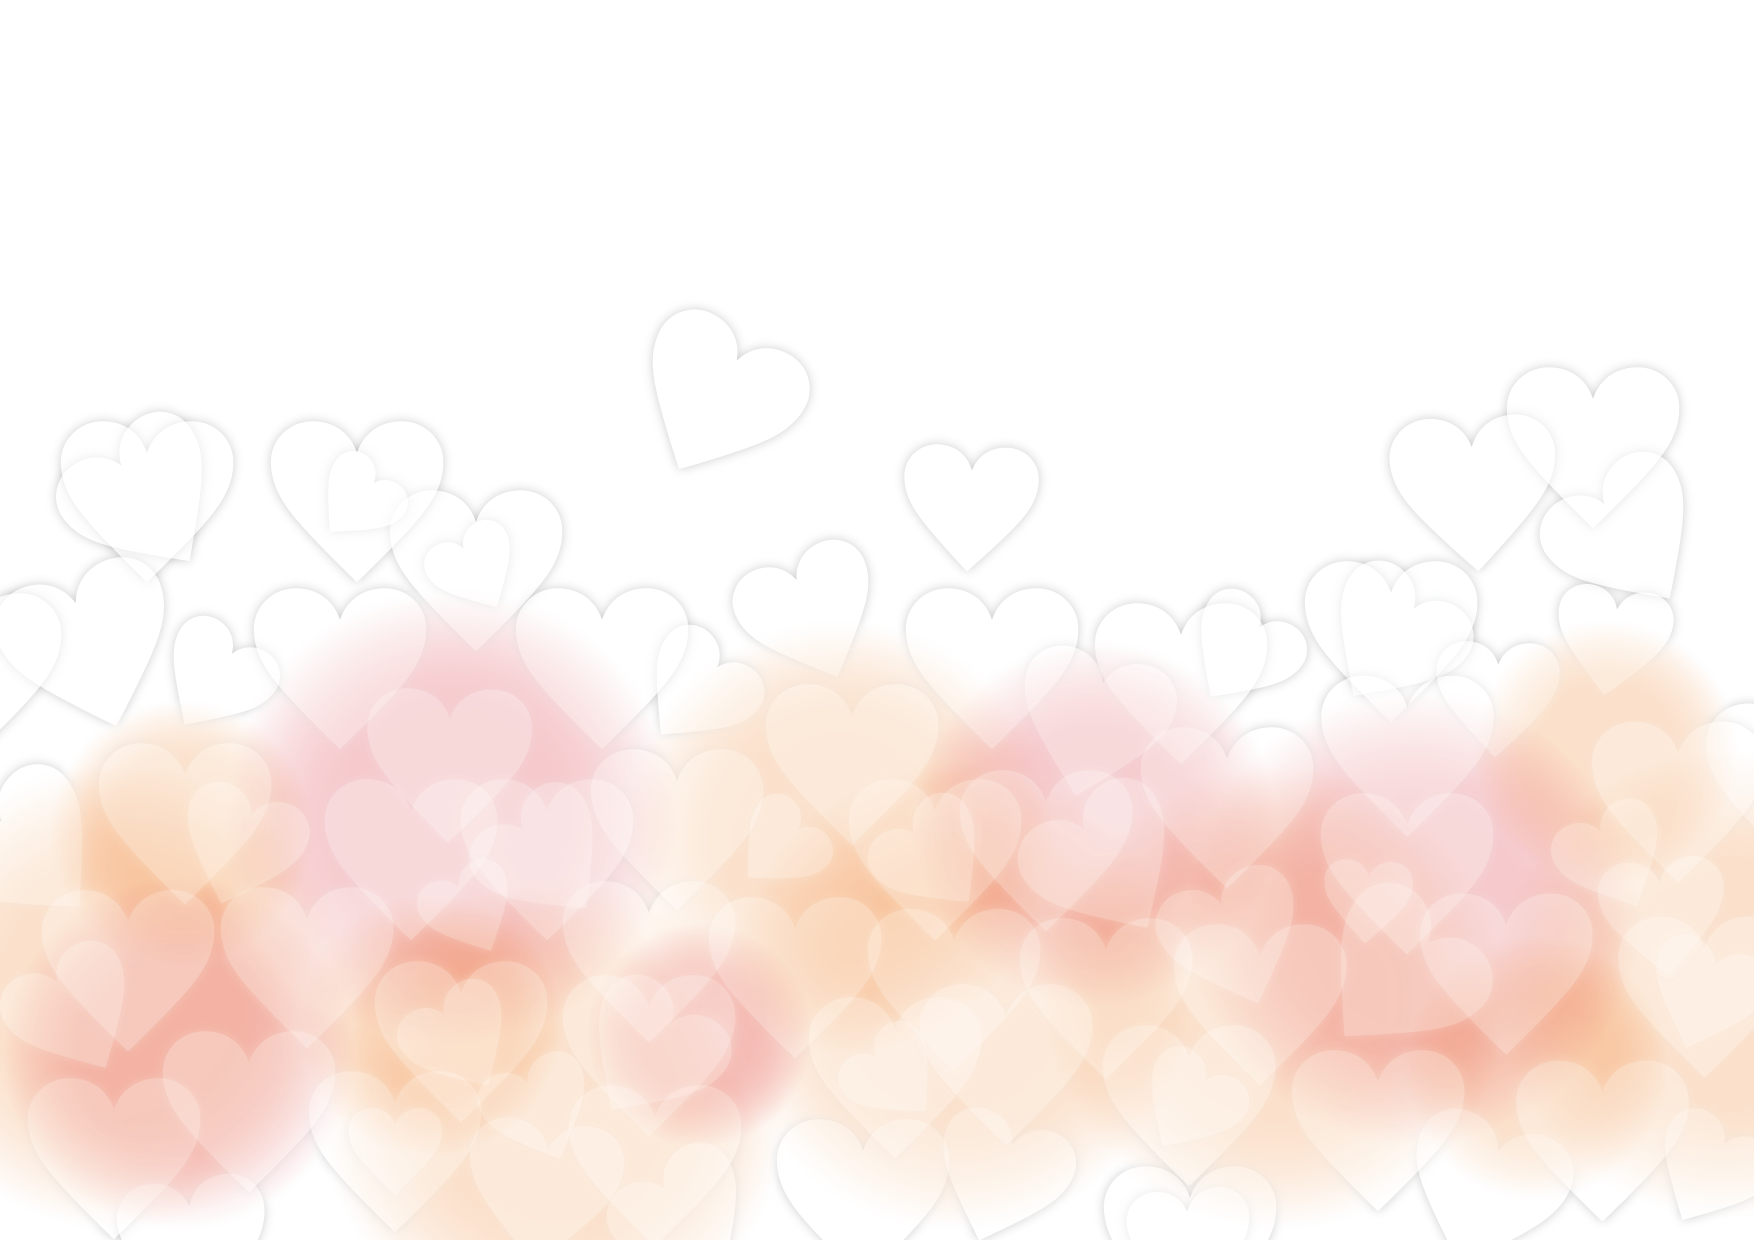 可愛いイラスト無料 バレンタイン 背景 やわらか ピンク ハート Free Illustration Valentine Background Soft Pink Heart 公式 イラスト素材サイト イラストダウンロード